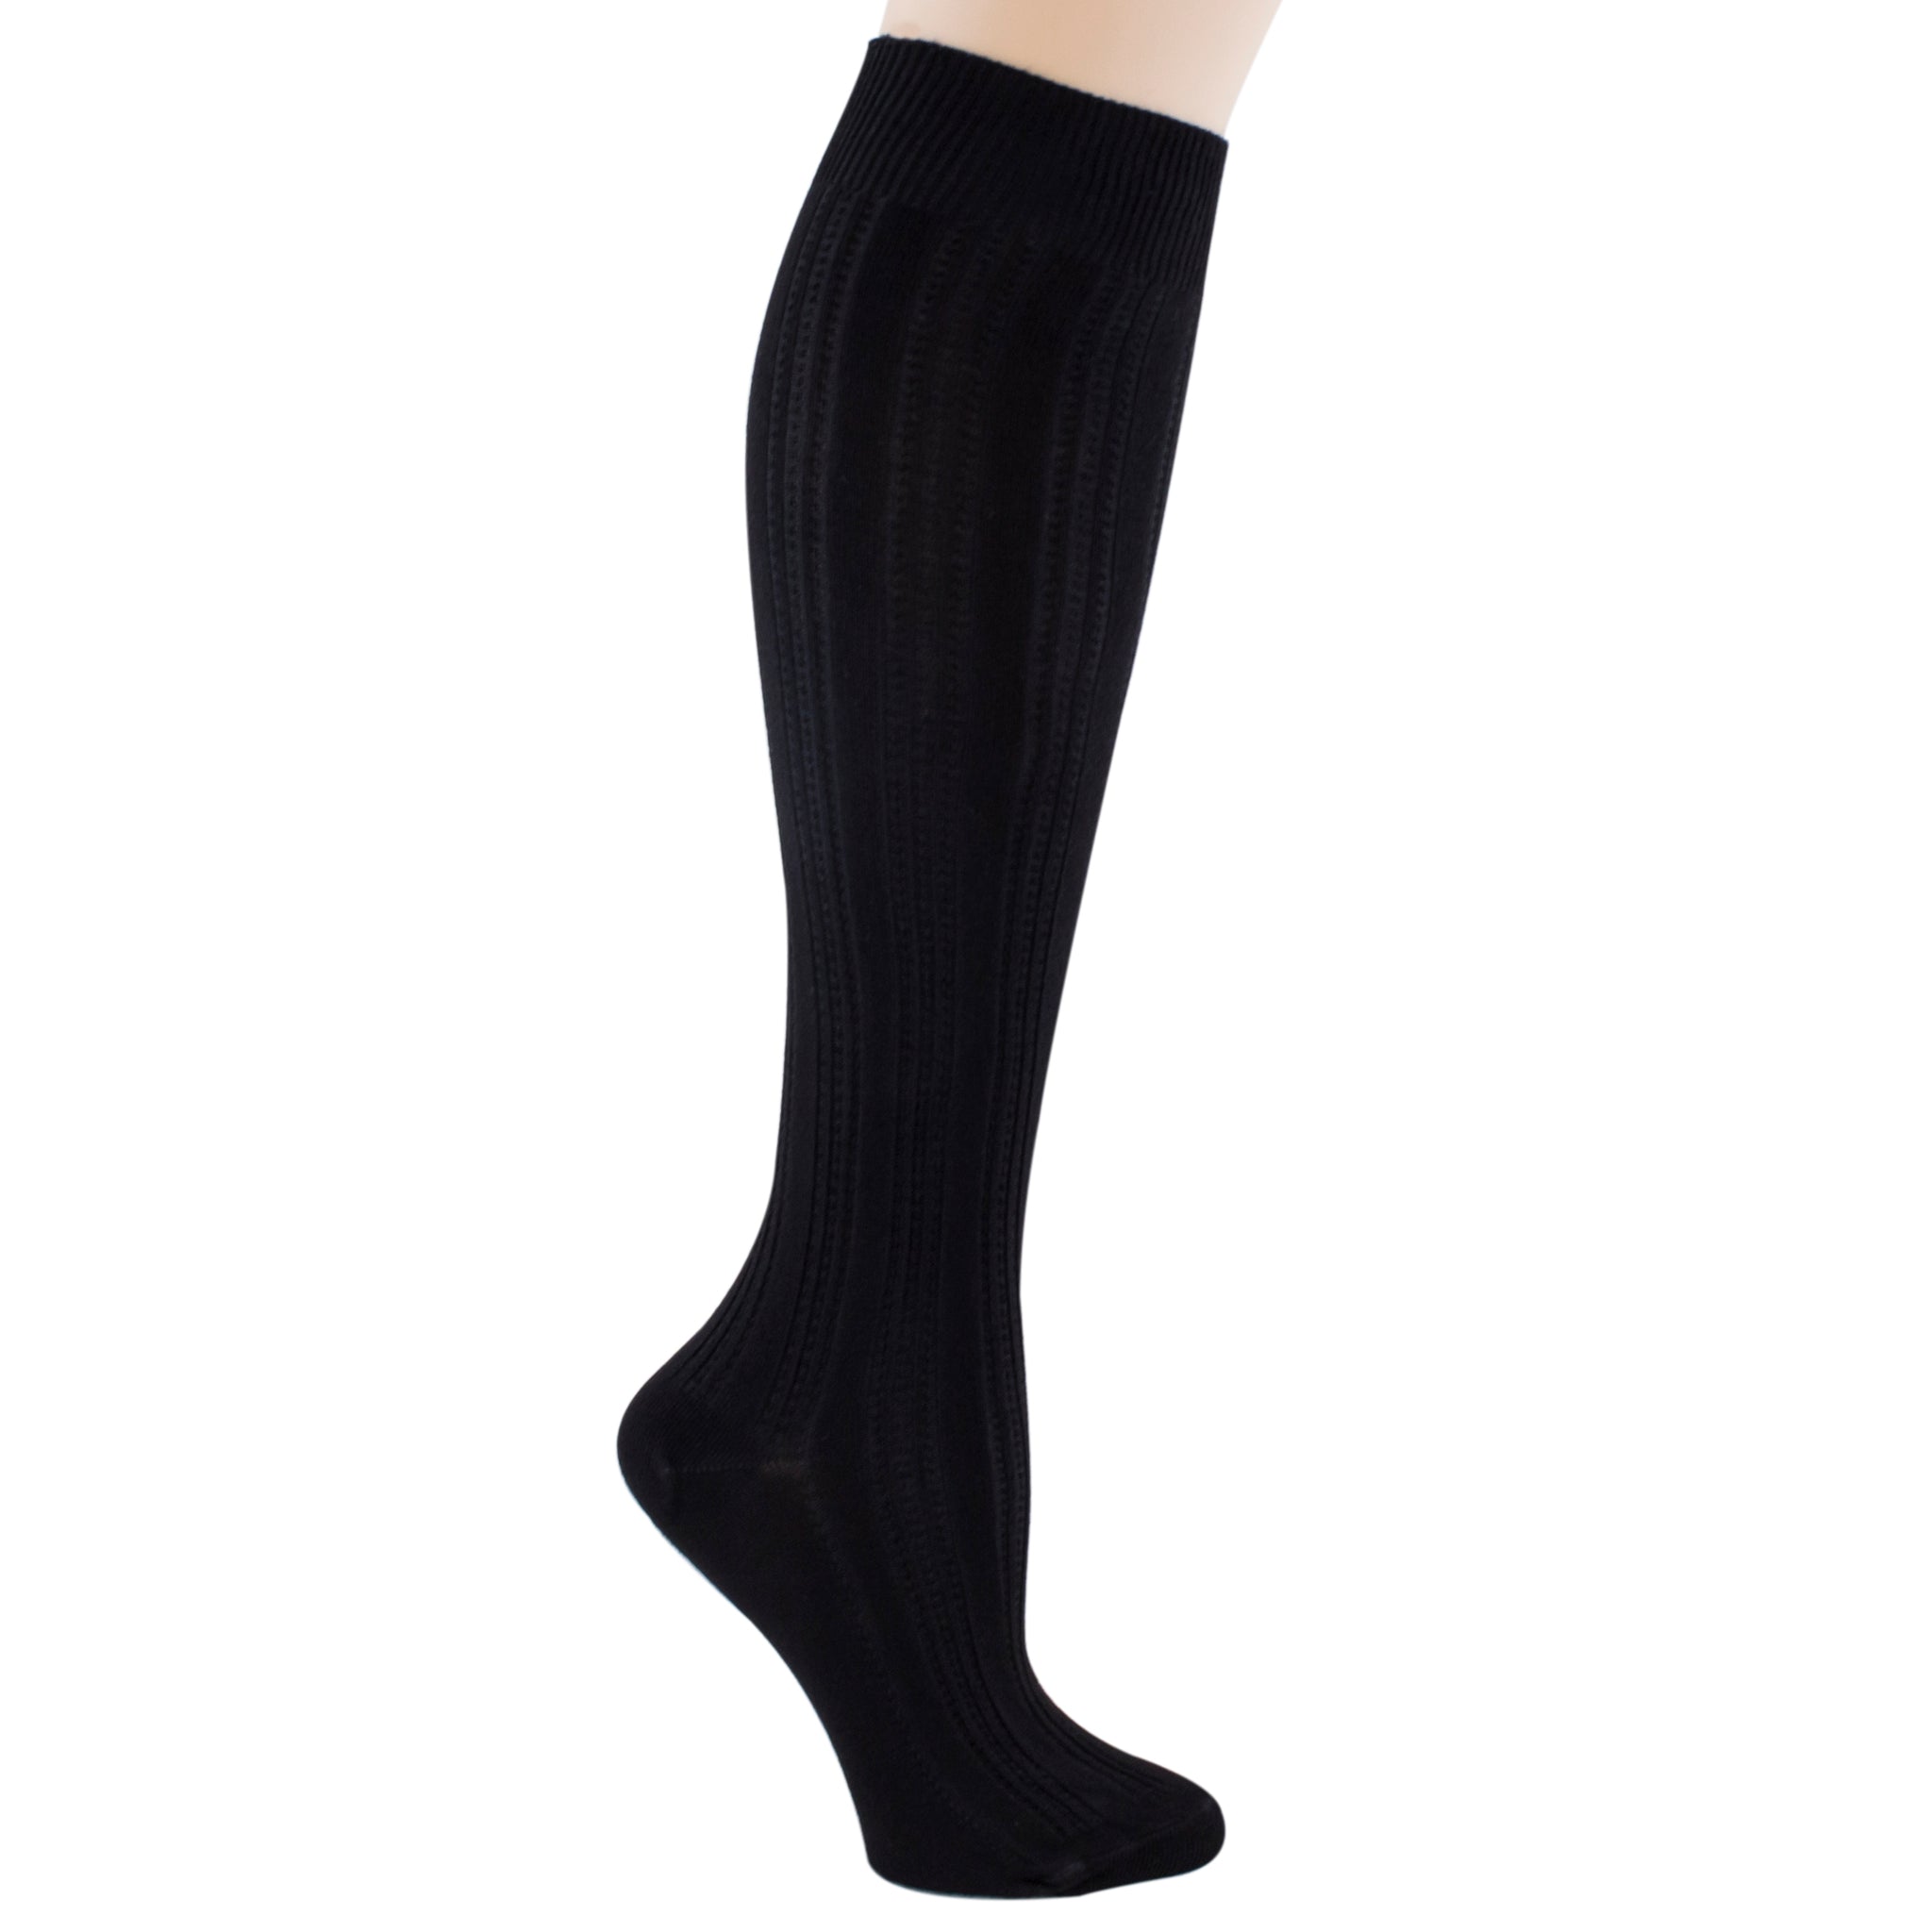 Weaver's Apparel Women's Knee High Socks – Good's Store Online